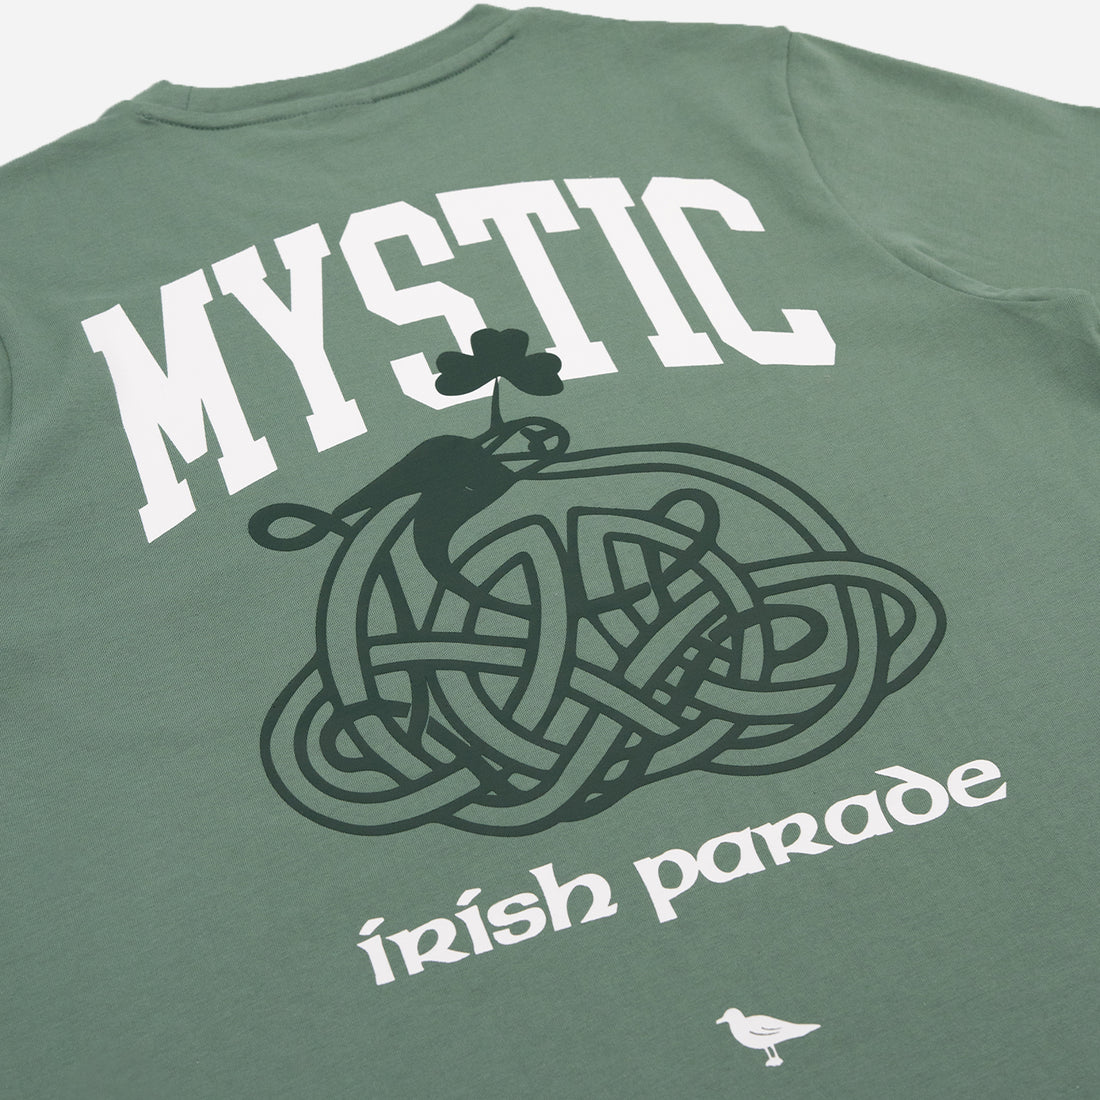 Just Mystic x Mystic Irish Parade Foundation T-Shirt